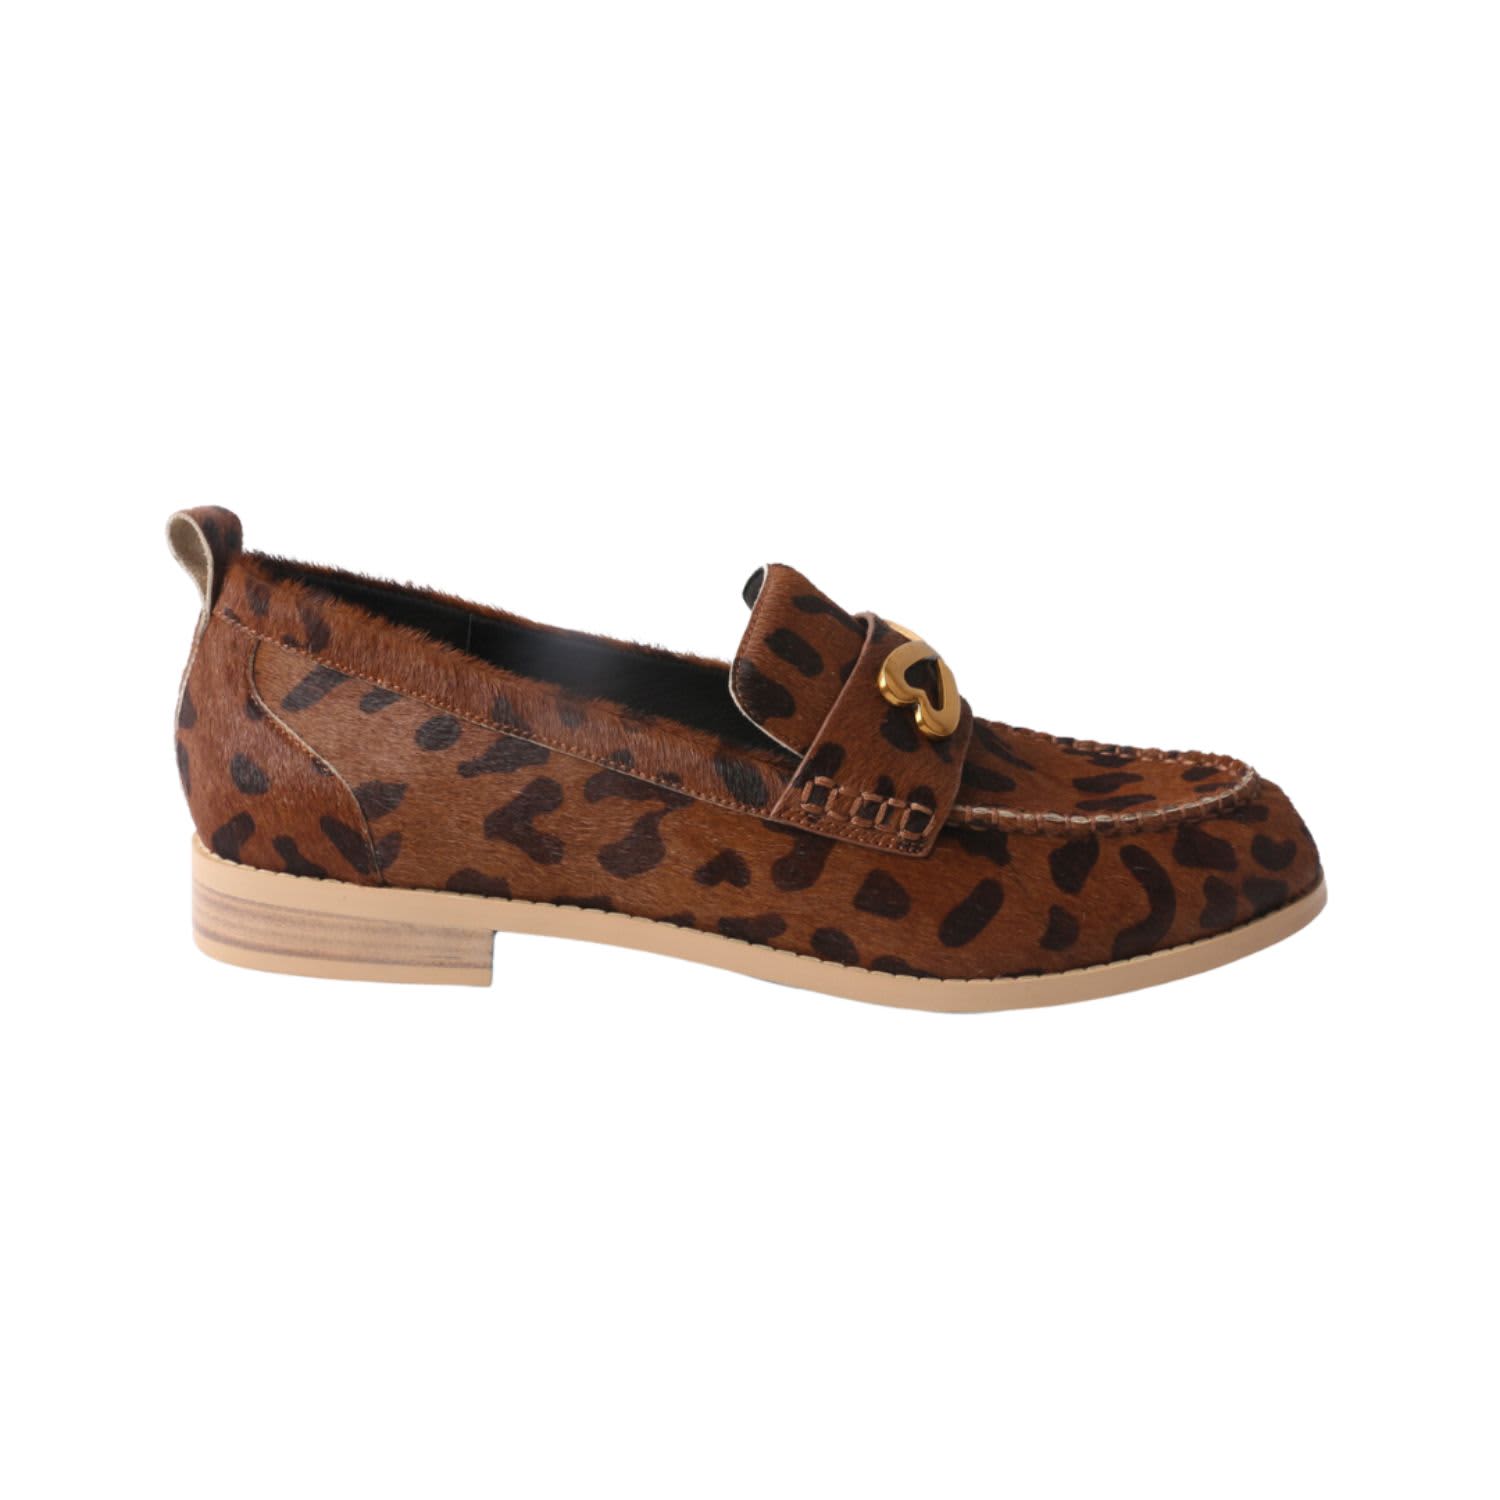 Calf Hair Leather Classic Loafer - Brown & Black Cheetah Print by Etta  Grove Footwear